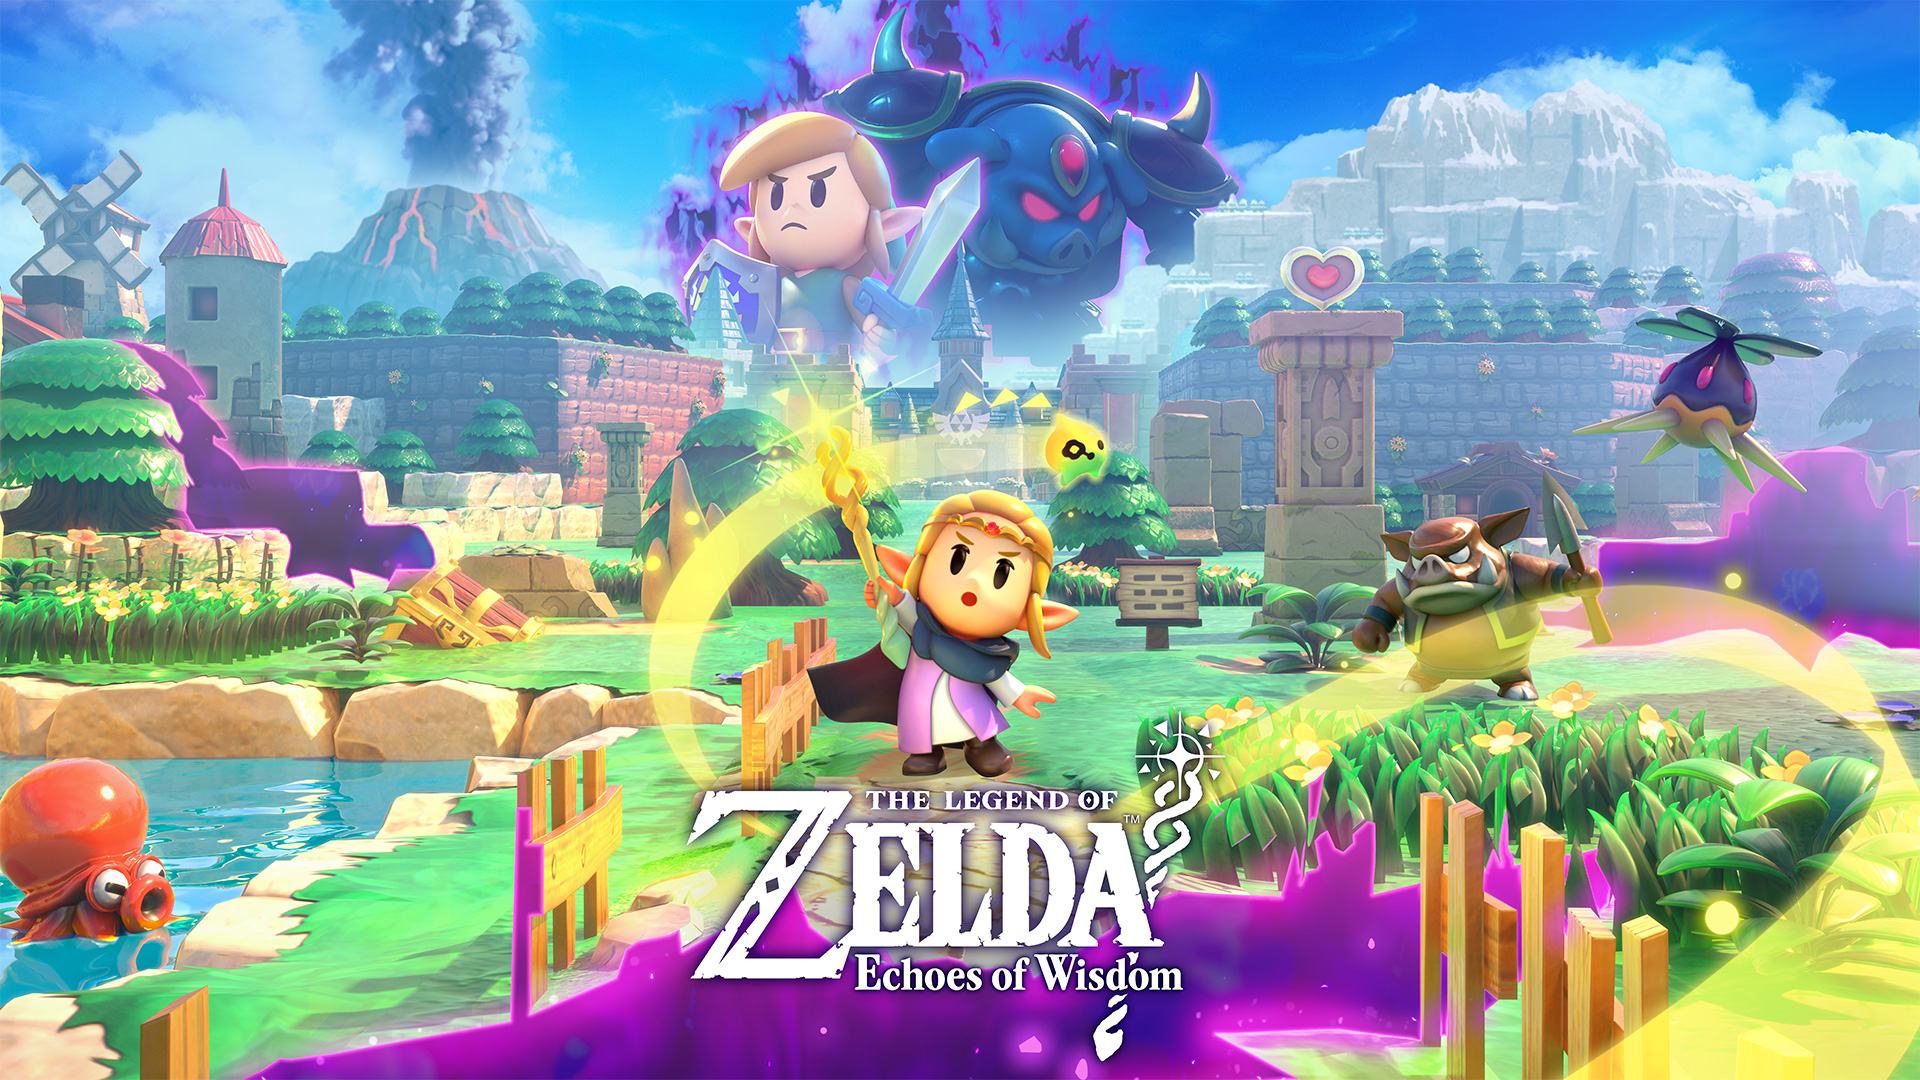 Legend of Zelda: Echoes of Wisdom stars Princess Zelda in a new adventure